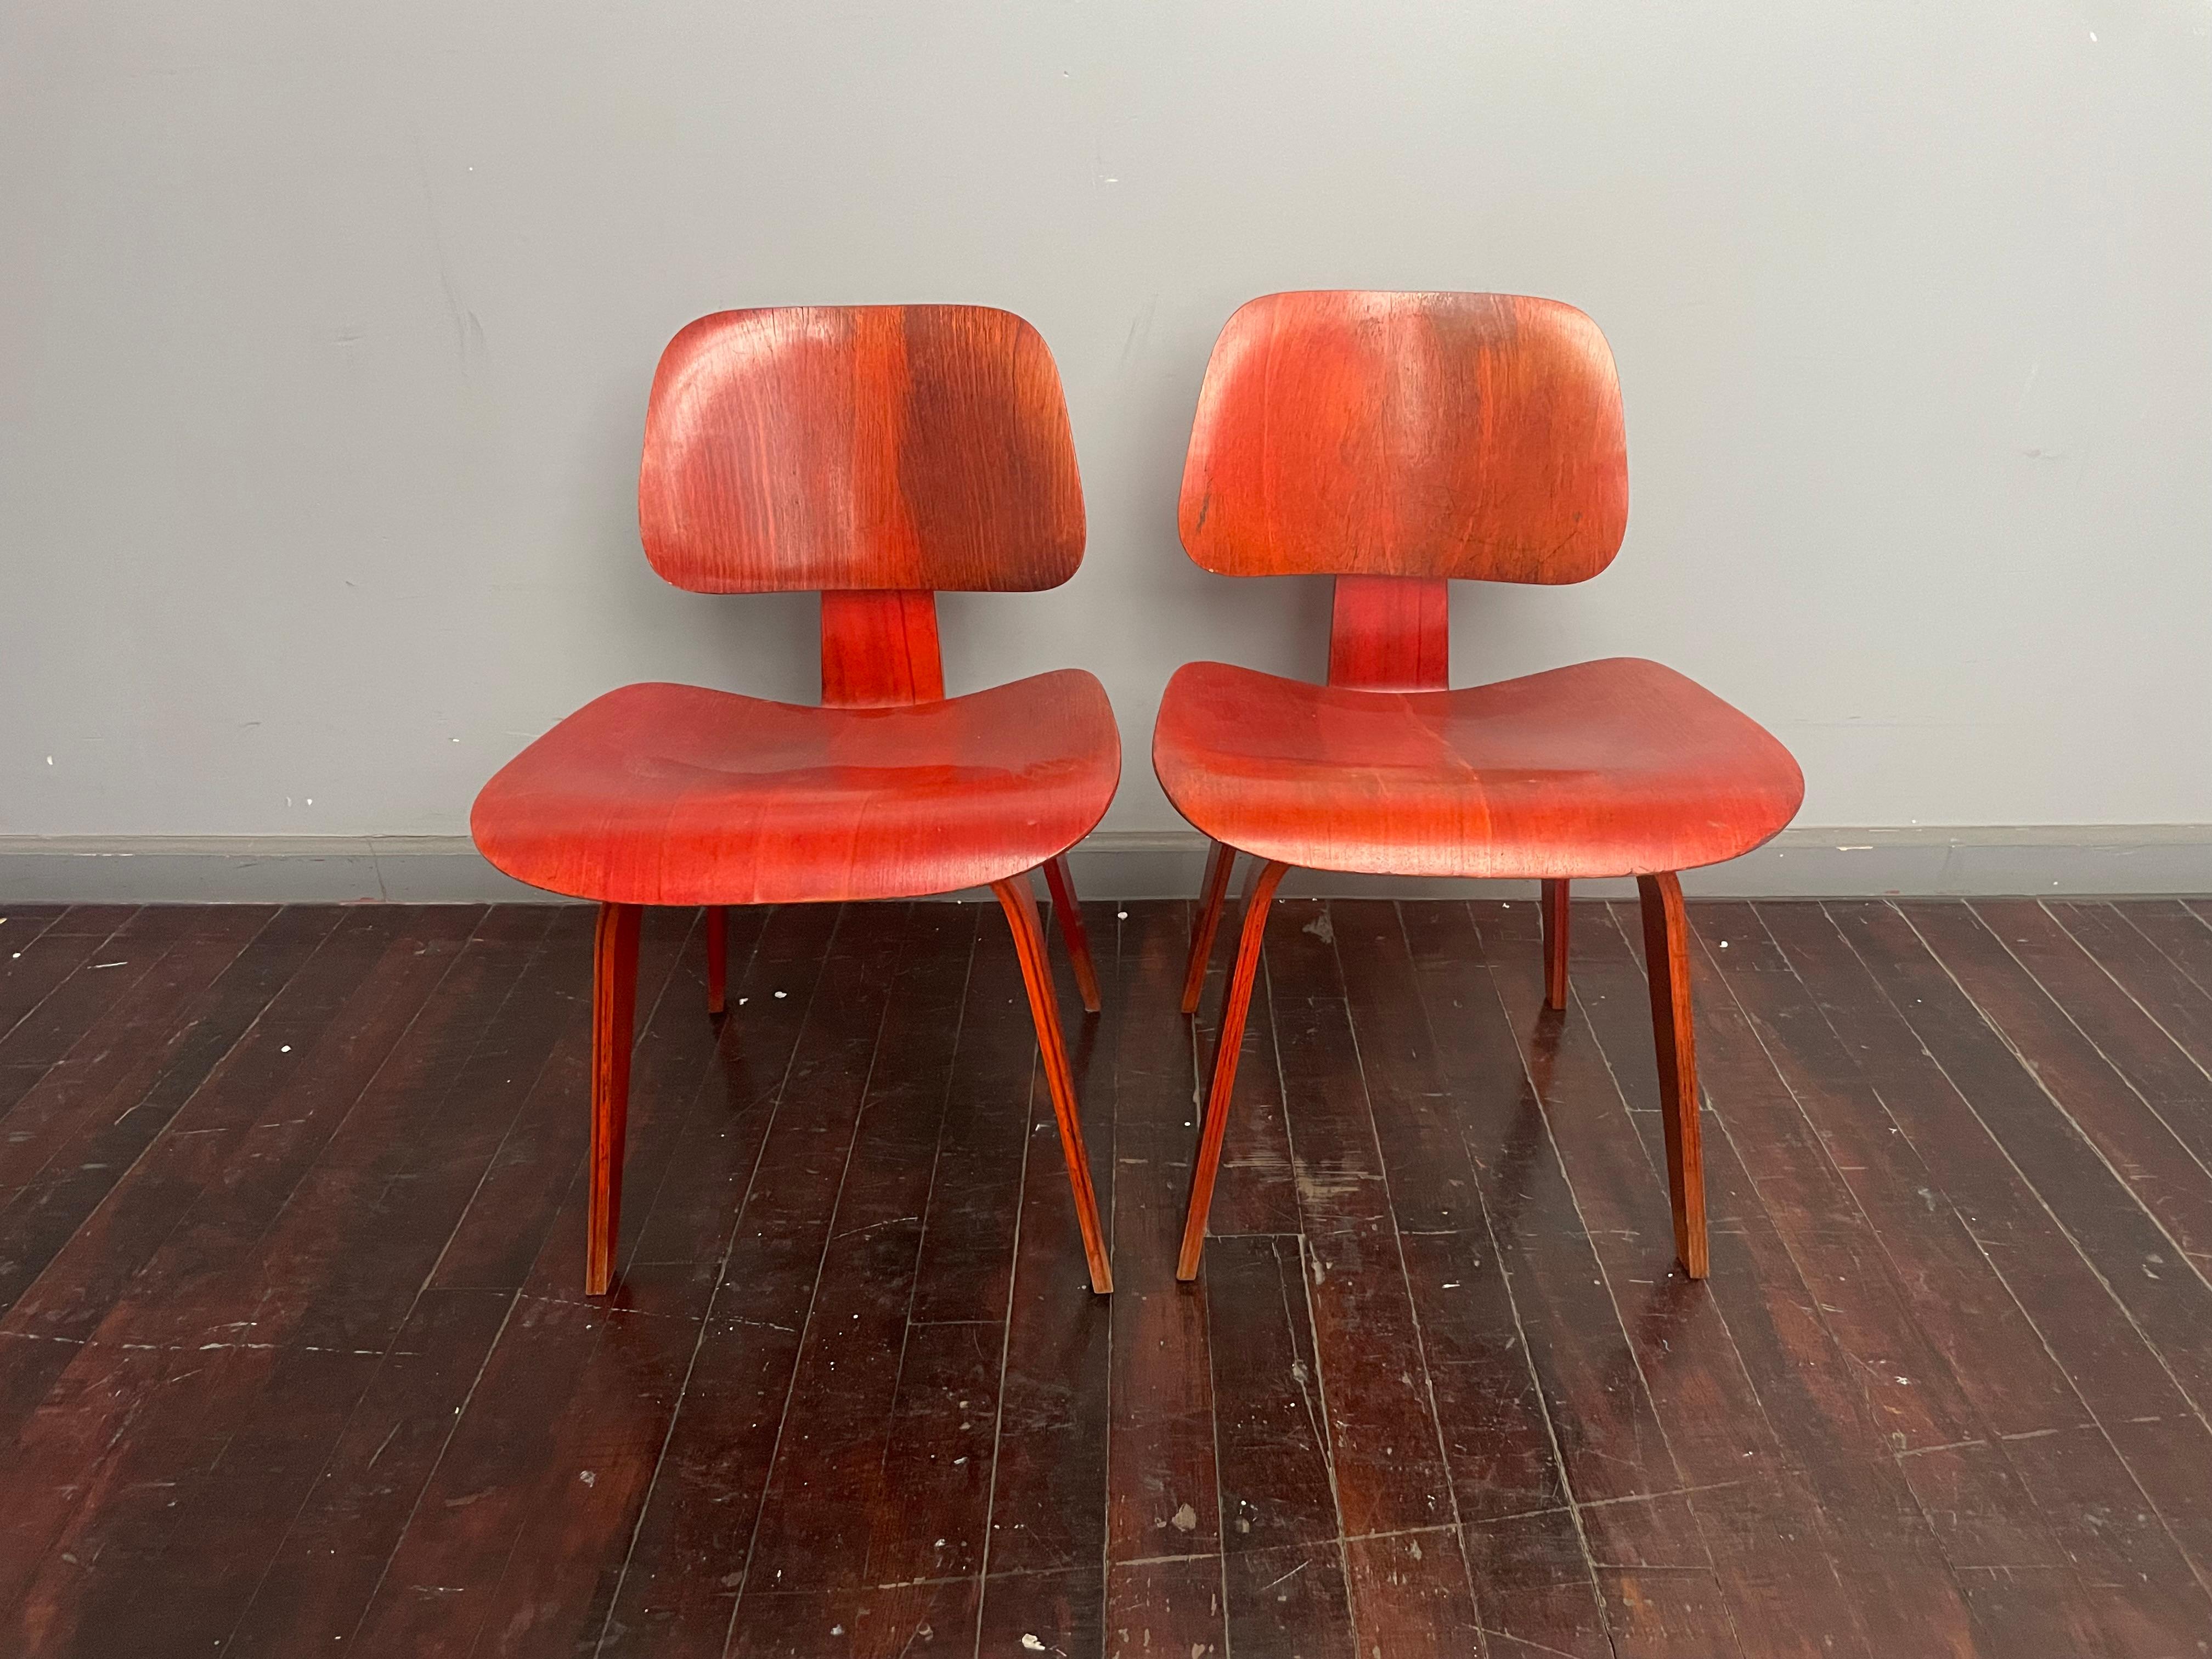 Nous vous présentons une paire rare de chaises Eames DCW en teinture rouge à l'aniline. Les deux chaises portent l'étiquette Evans, qui indique qu'elles ont été fabriquées avant 1950. 

Les chaises présentent une belle patine. 